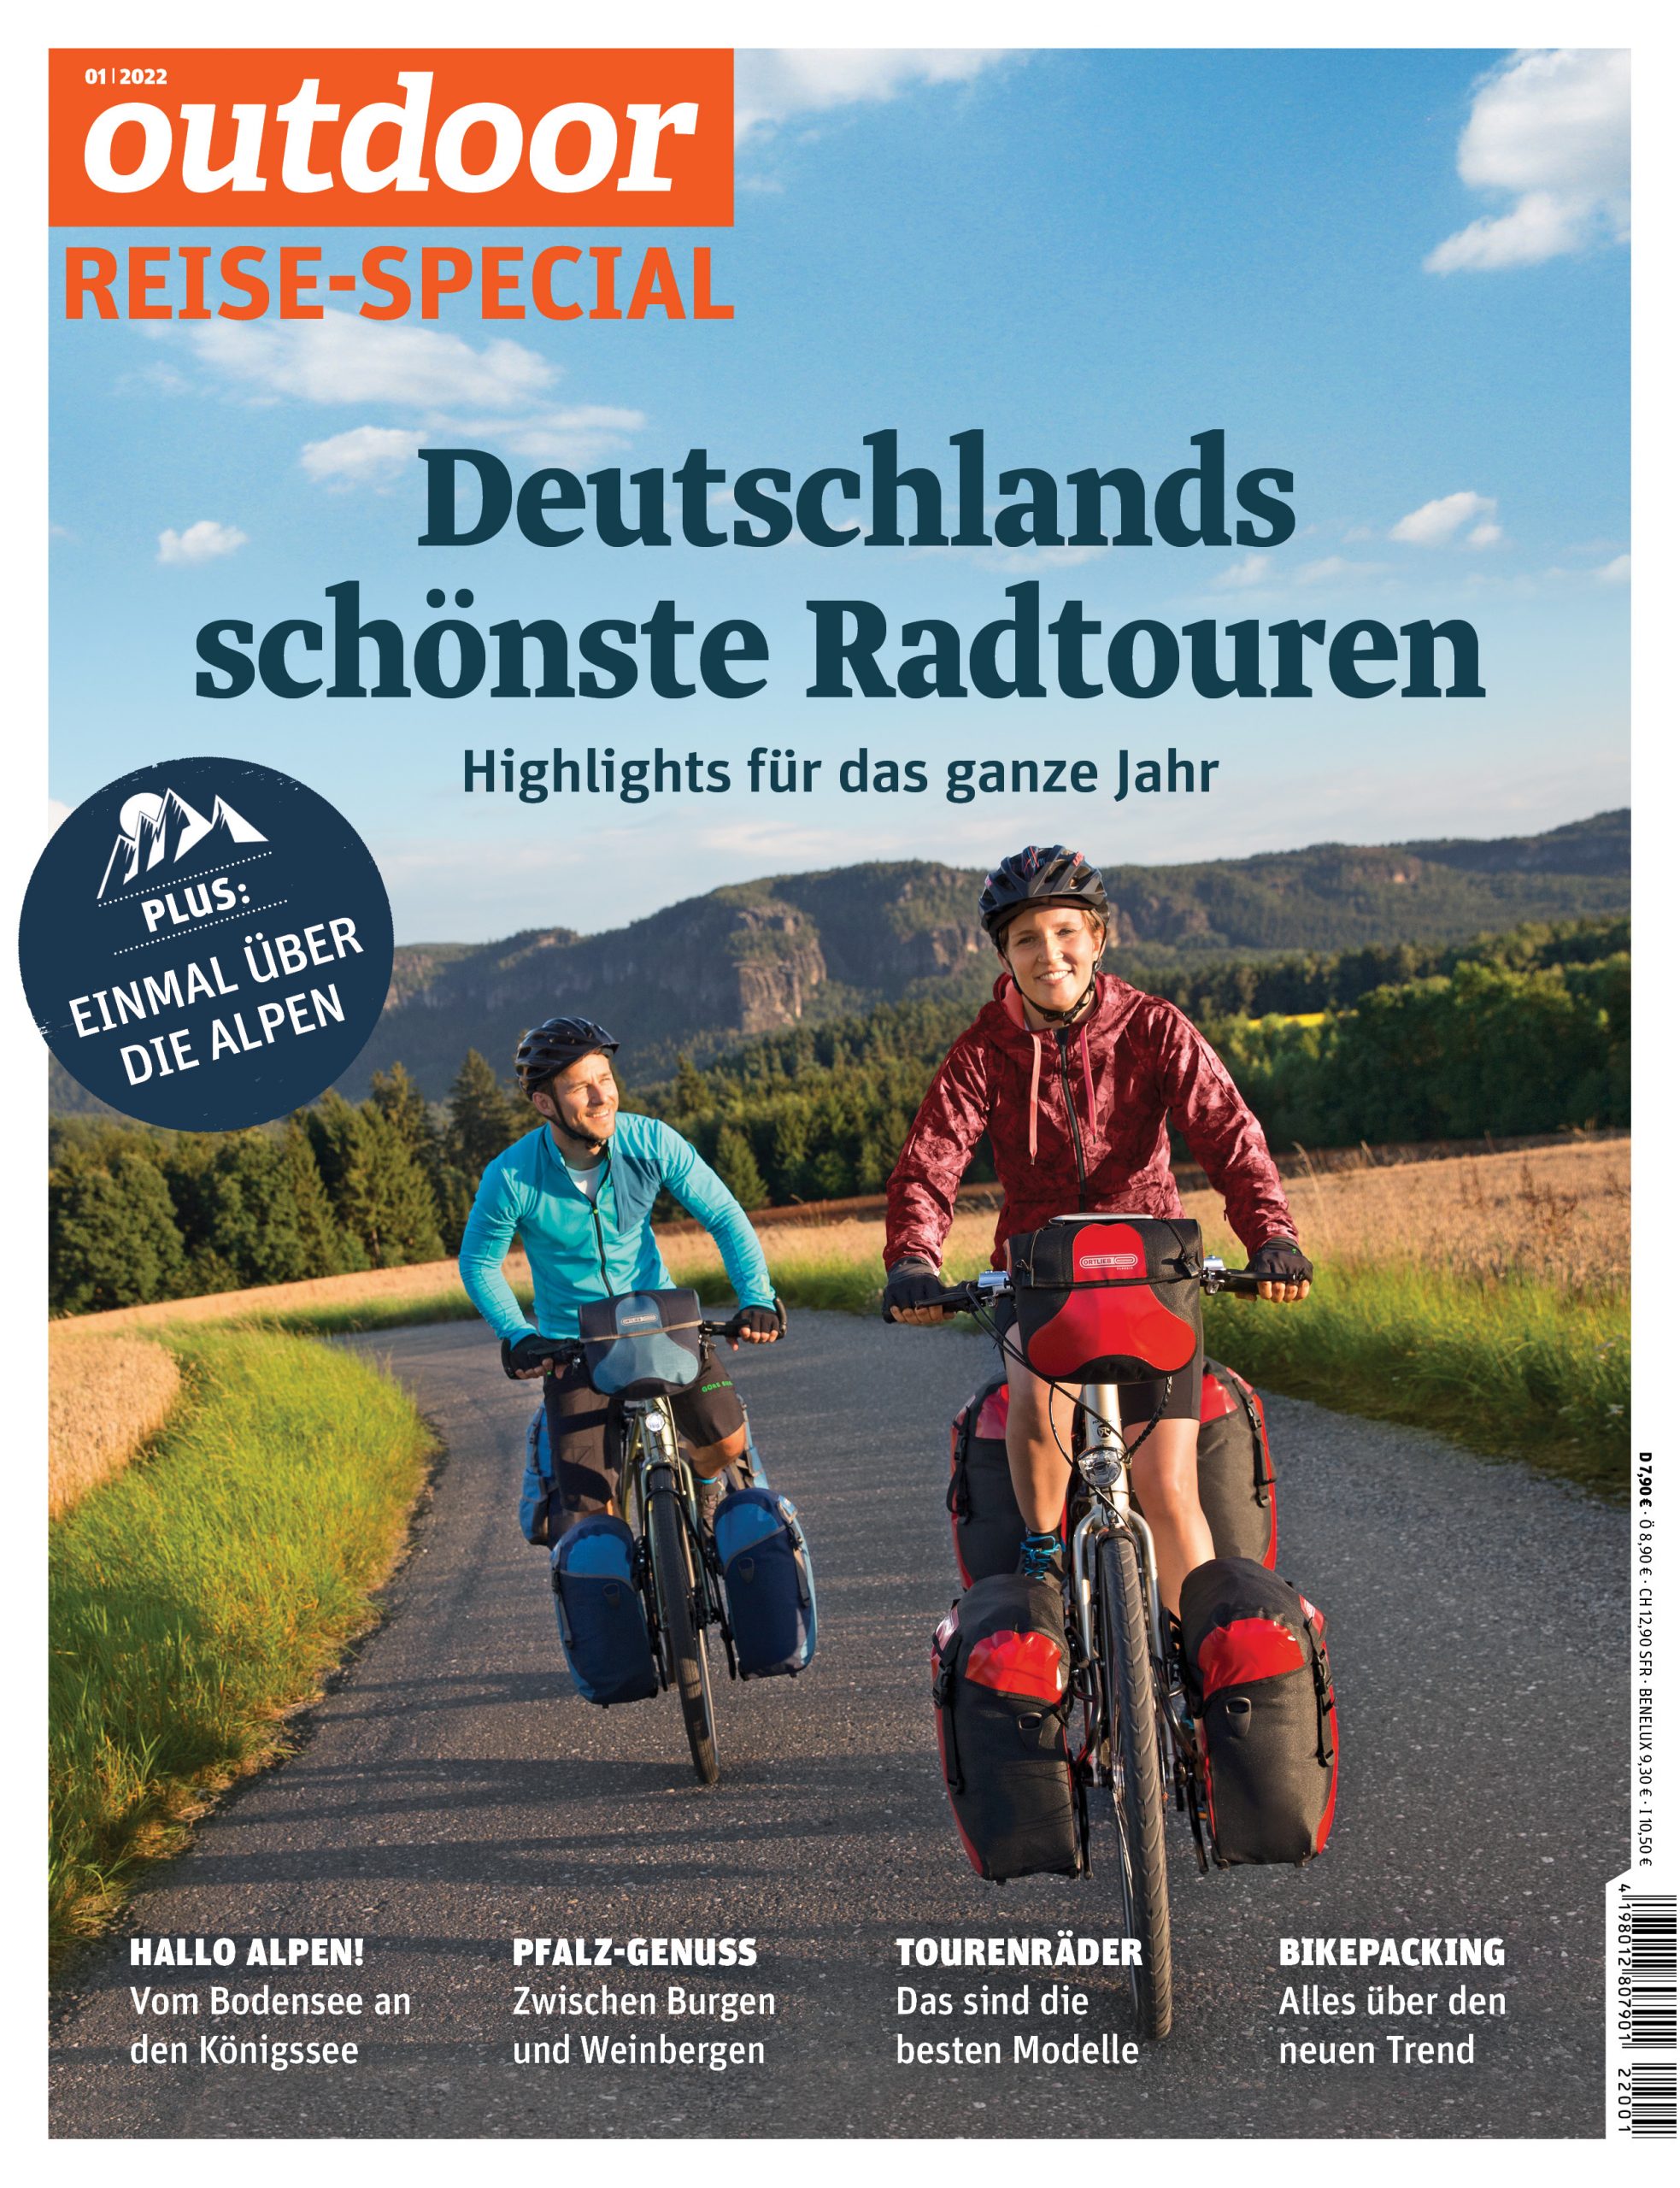 "Deutschlands schönste Radtouren": Das neue Sonderheft